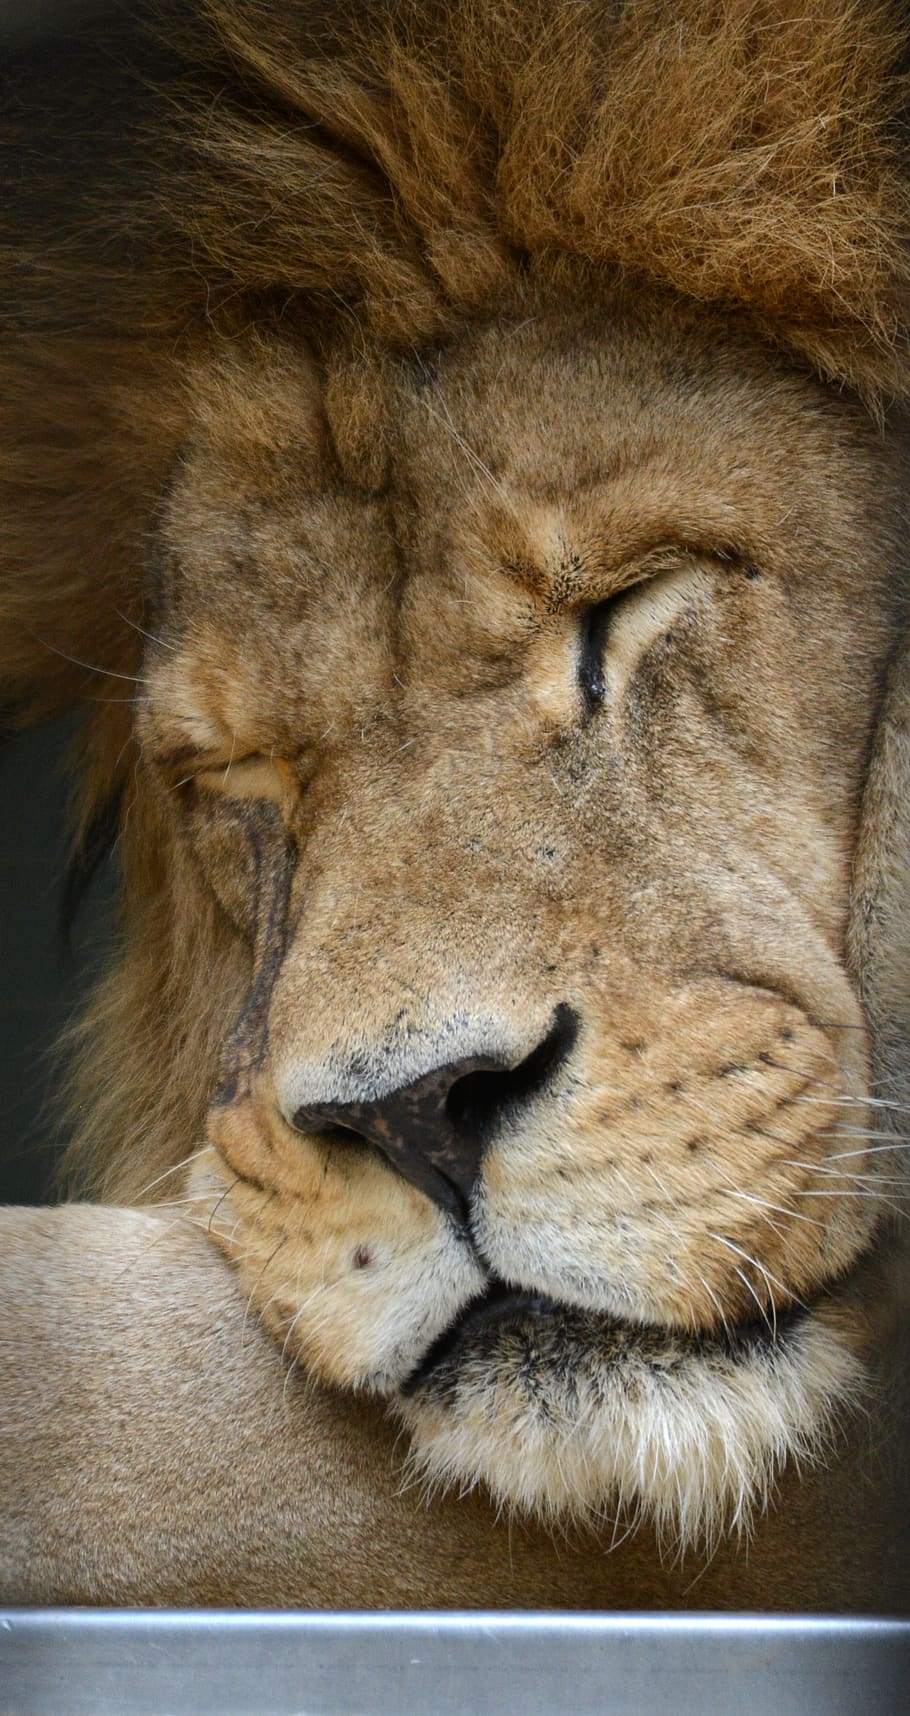 león, animal, cara, cerrar, retrato, durmiendo, salvaje, zoológico, gato, vida silvestre